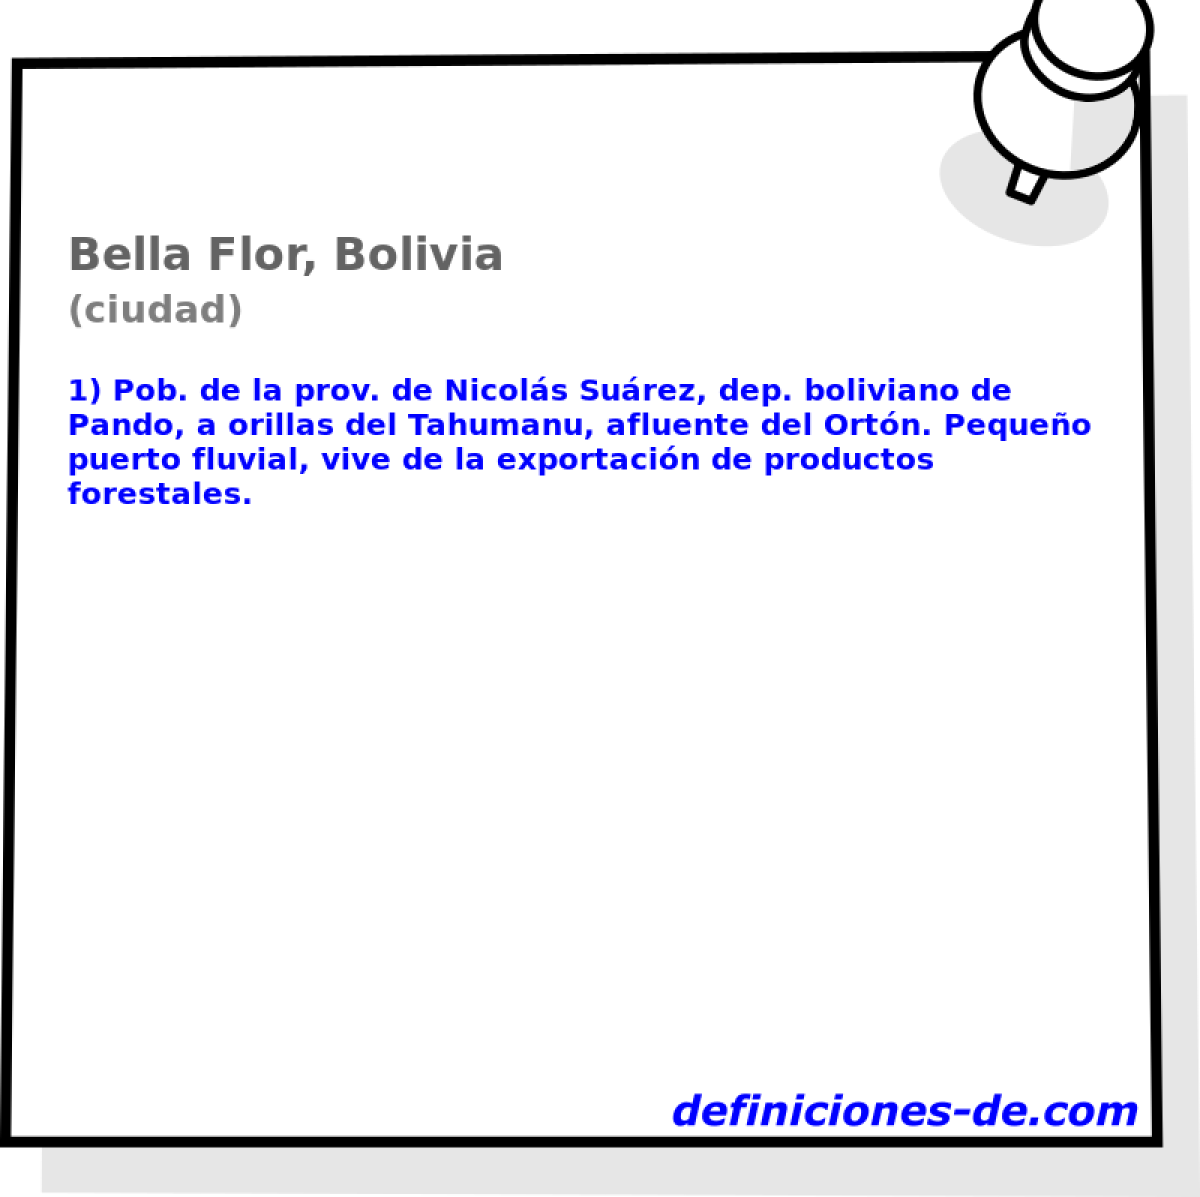 Bella Flor, Bolivia (ciudad)